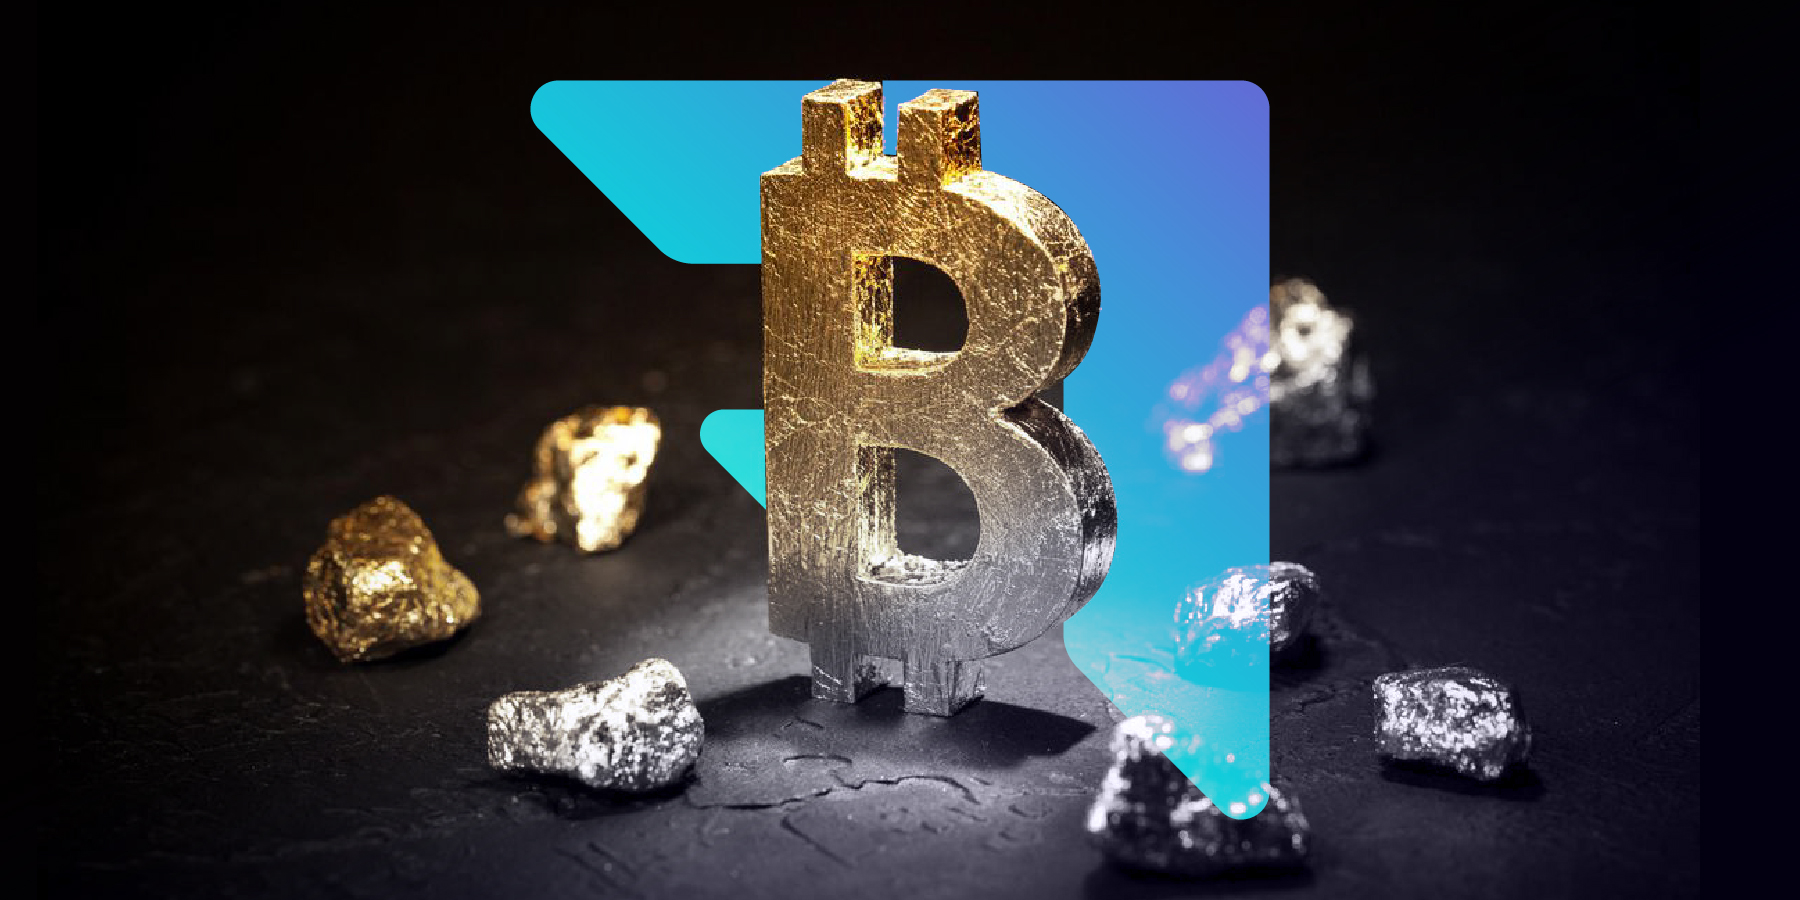 bitcoin, gold